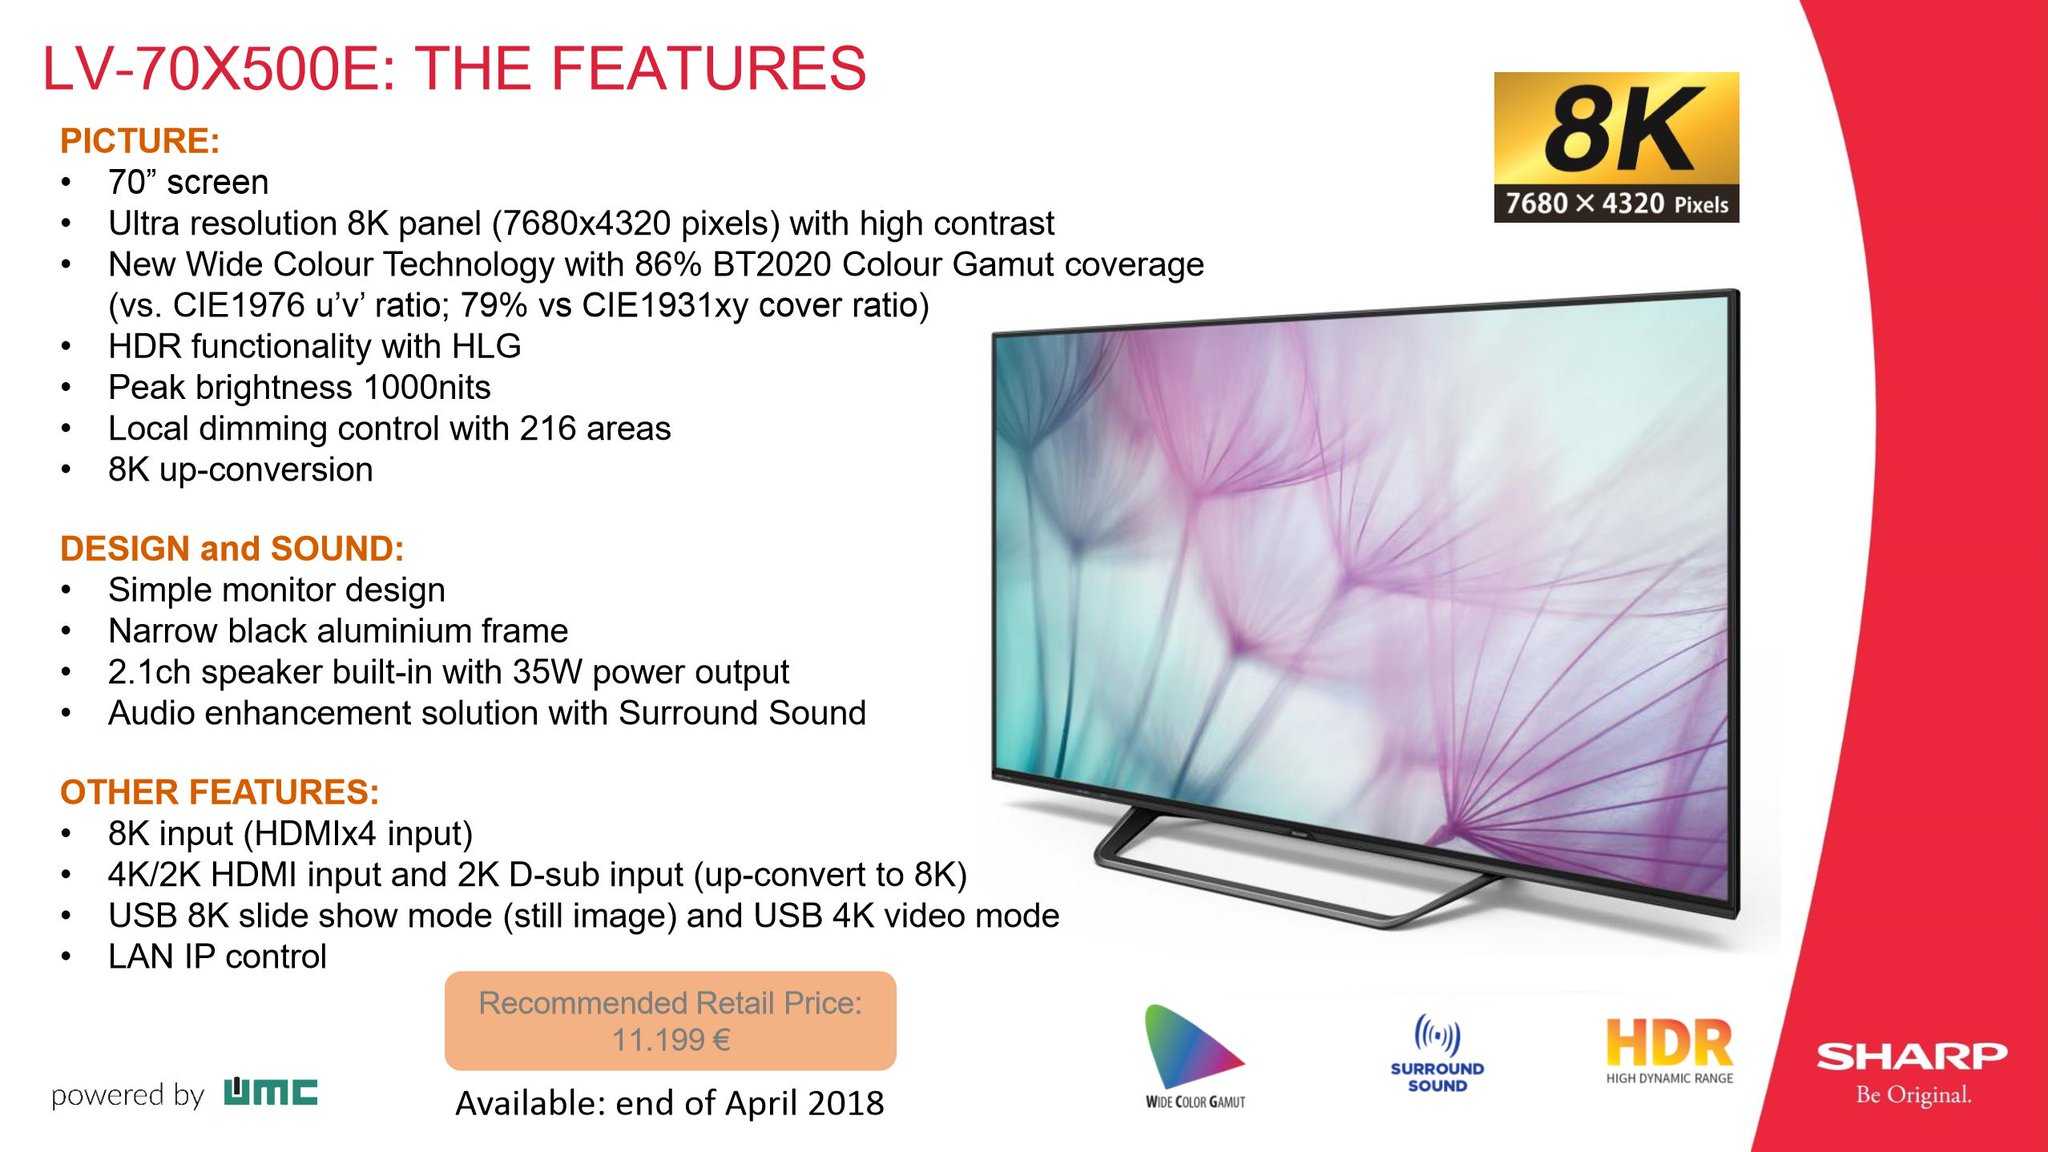 Телевизор sharp lc-70 pro 10 r - купить | цены | обзоры и тесты | отзывы | параметры и характеристики | инструкция